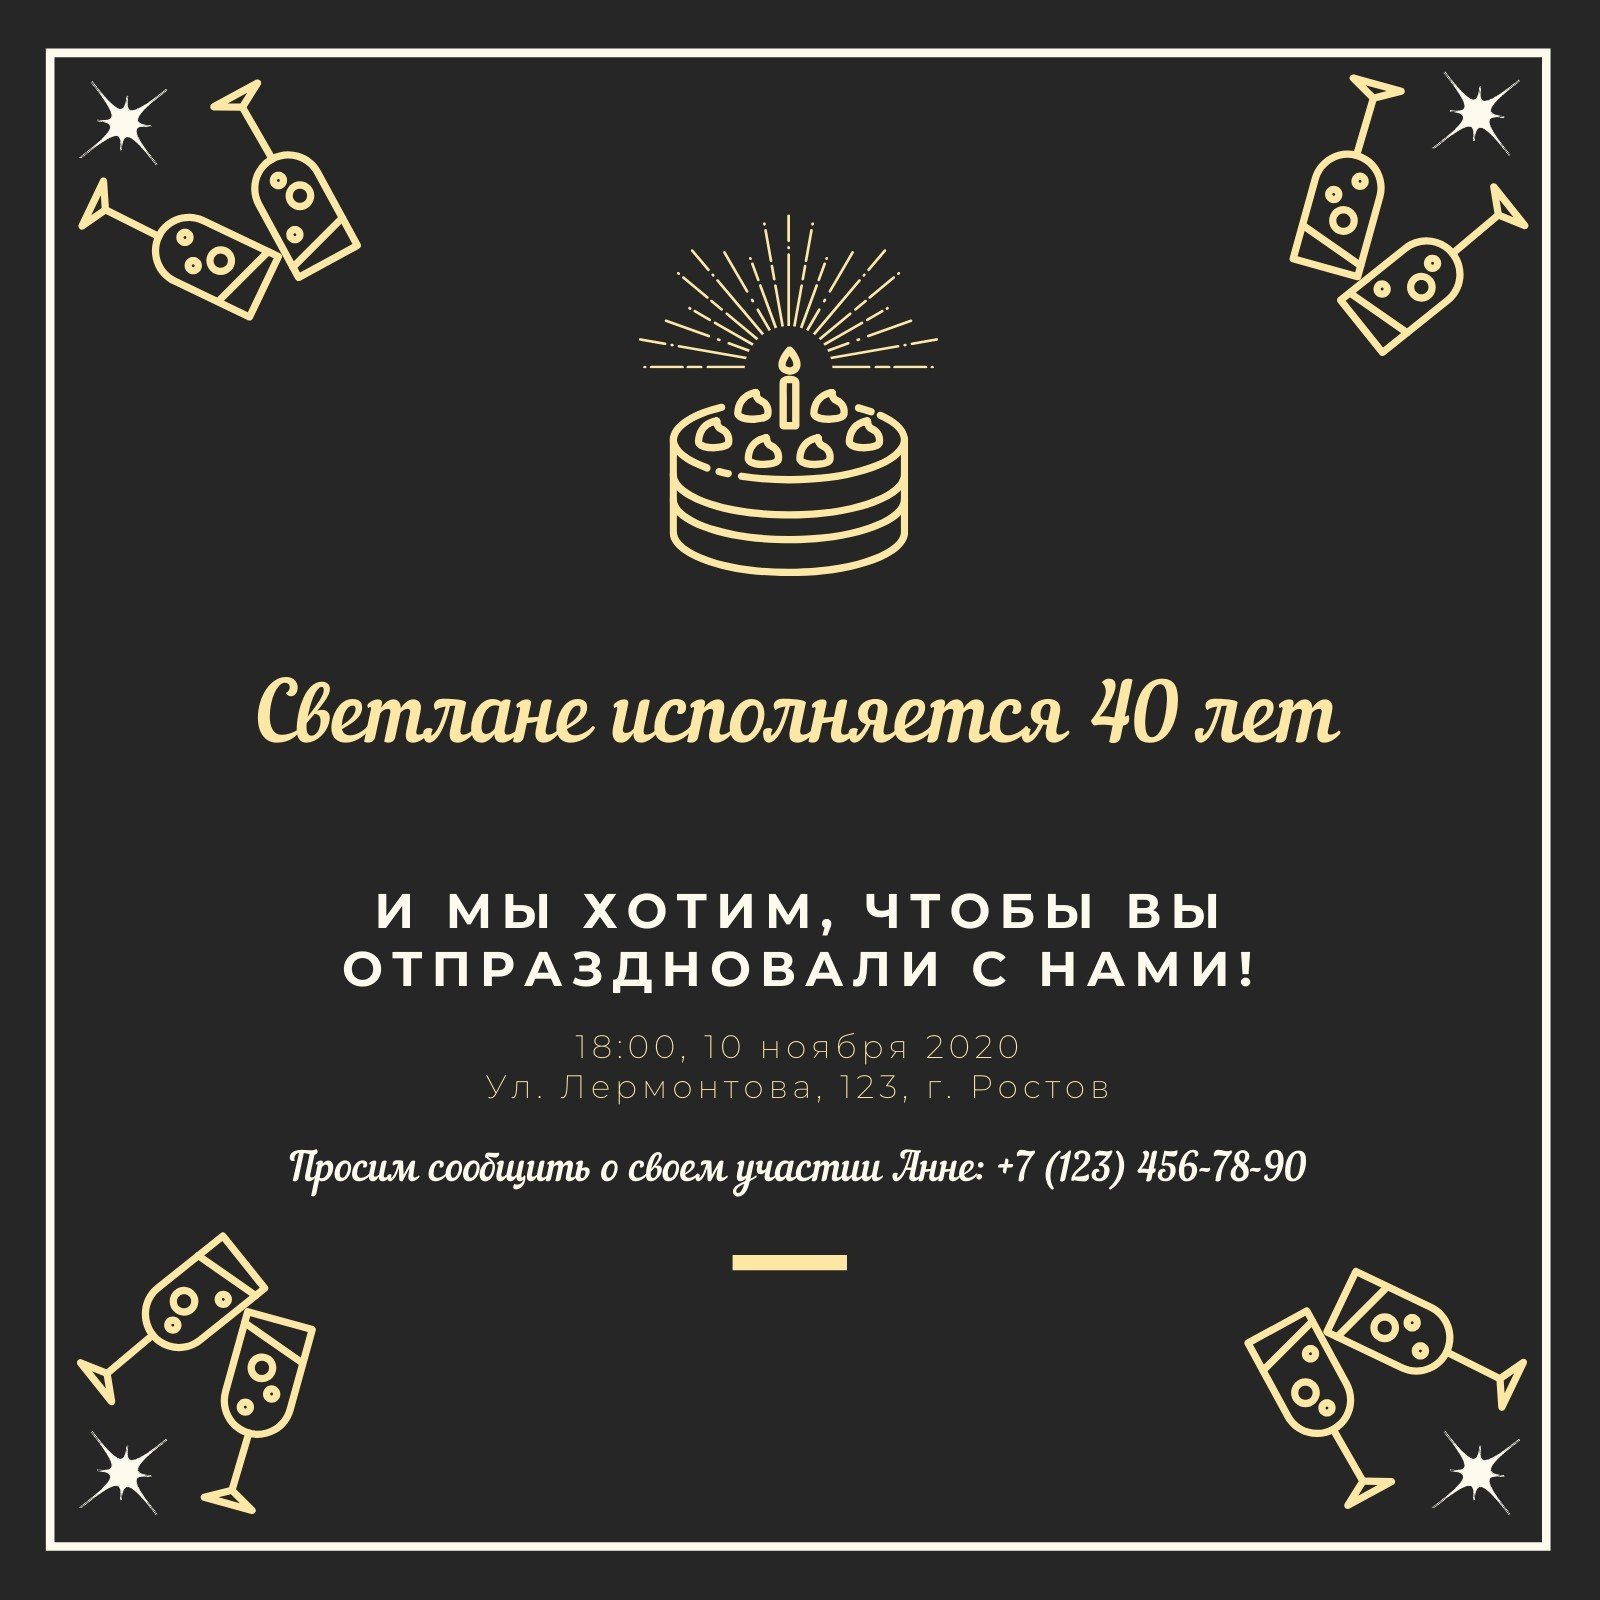 Пригласительное на праздник или мероприятие в русском стиле с возможностью онлайн редактирования